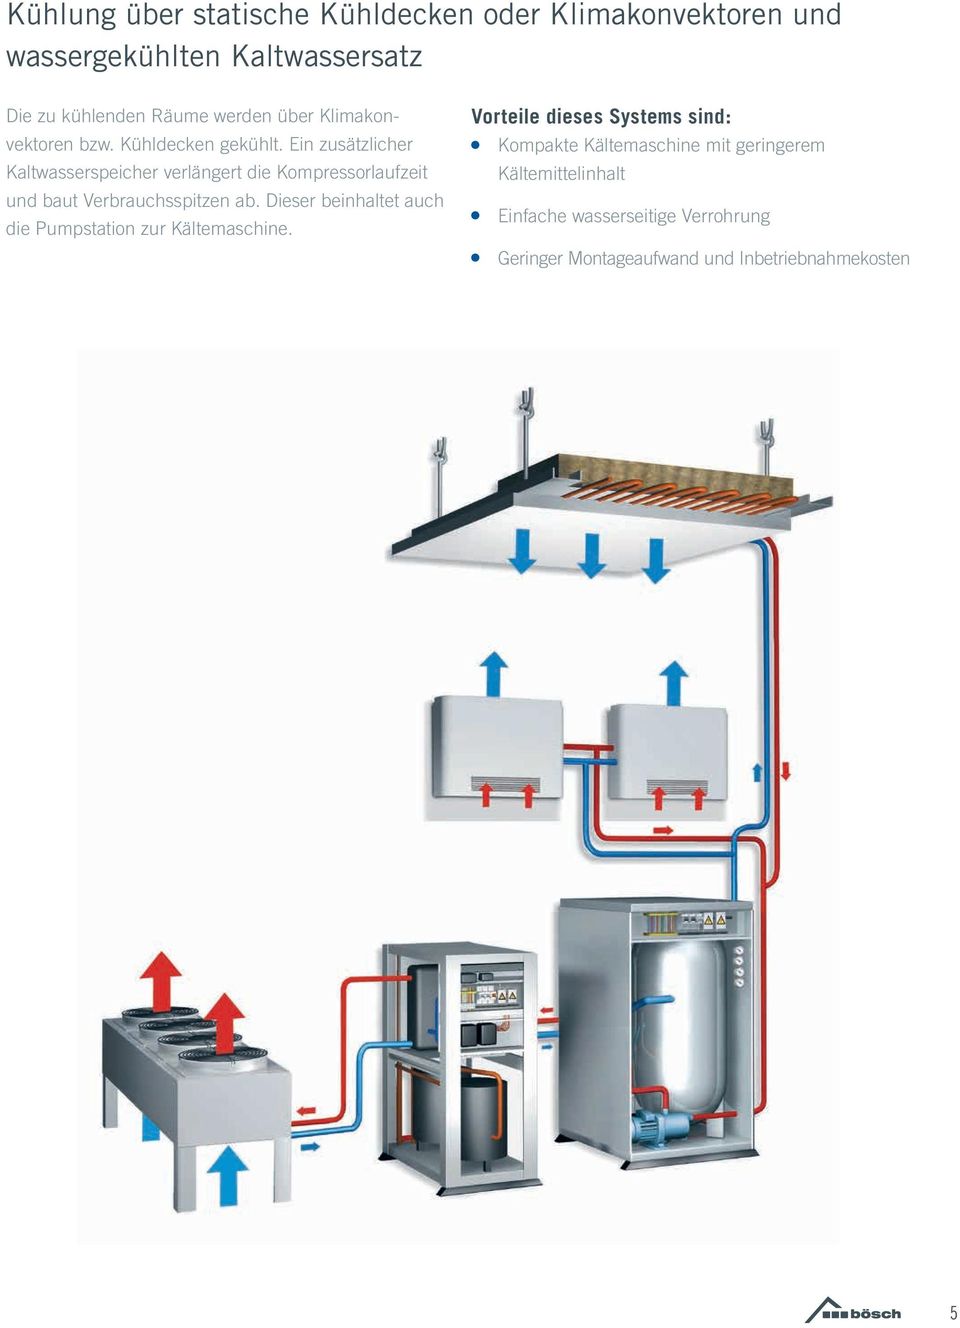 Ein zusätzlicher Kaltwasserspeicher verlängert die Kompressorlaufzeit und baut Verbrauchsspitzen ab.